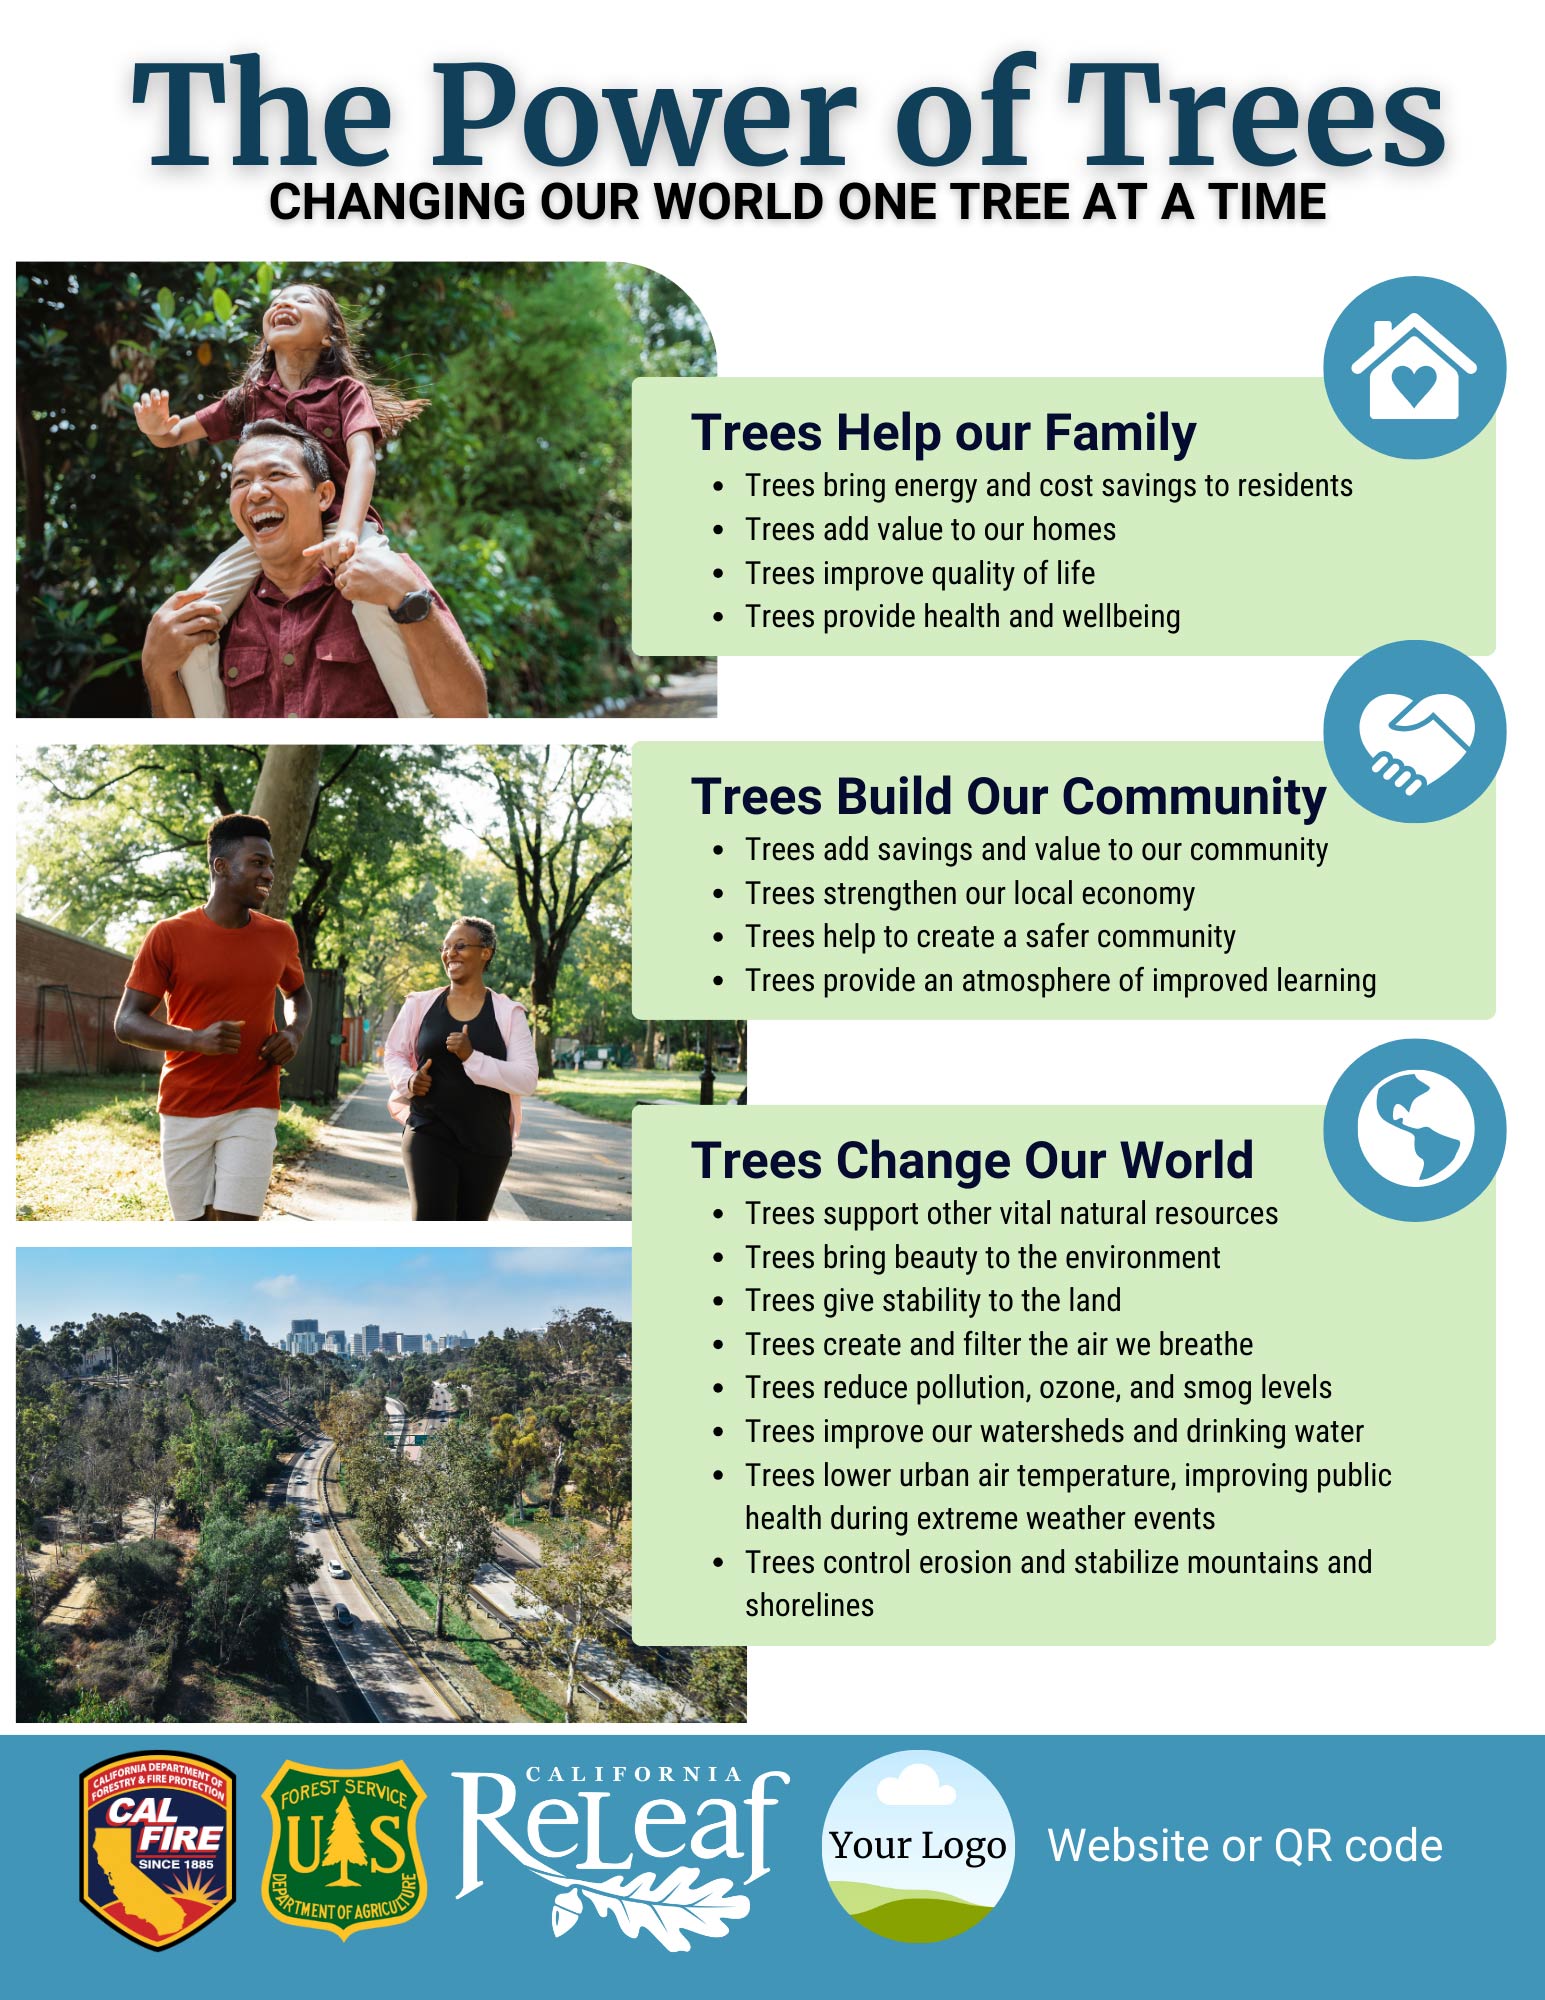 دی پاور آف ٹریز فلائر ٹیمپلیٹ کا پیش نظارہ تصویر جس میں درختوں کے فائدے کے بارے میں معلومات کے ساتھ ساتھ درختوں اور لوگوں کی تصاویر بھی شامل ہیں۔